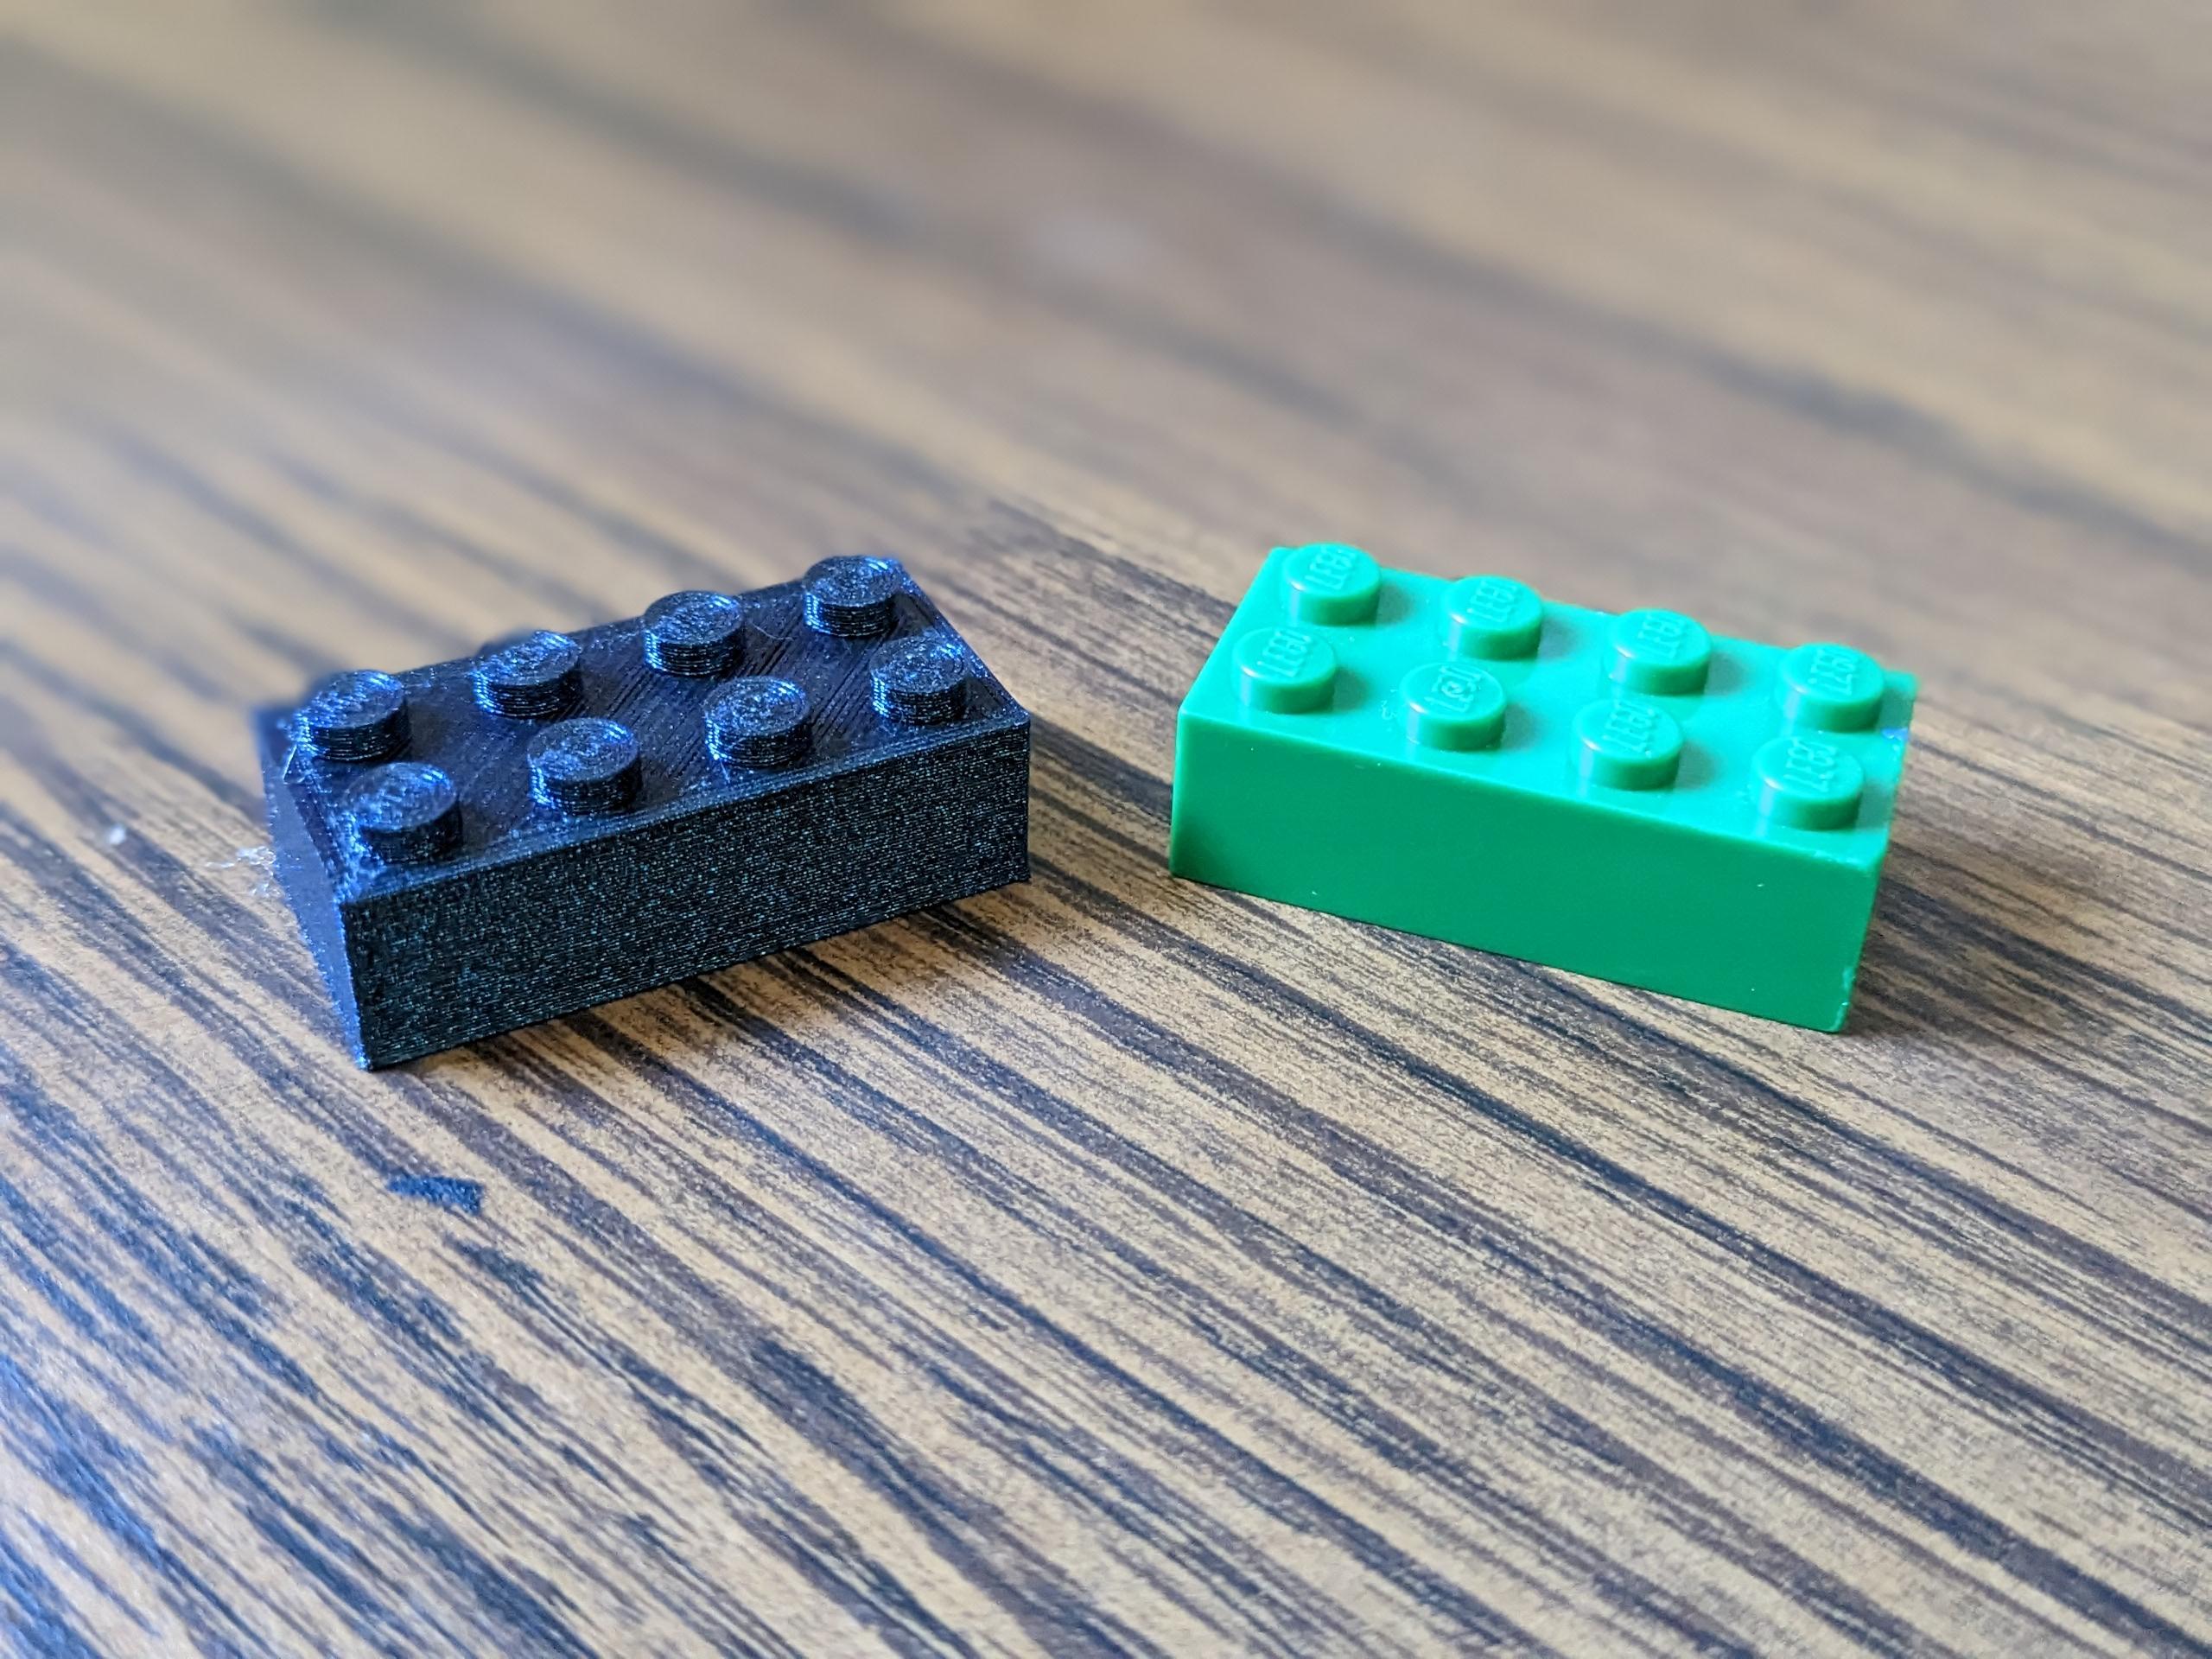 4x2 Lego Brick 3d model